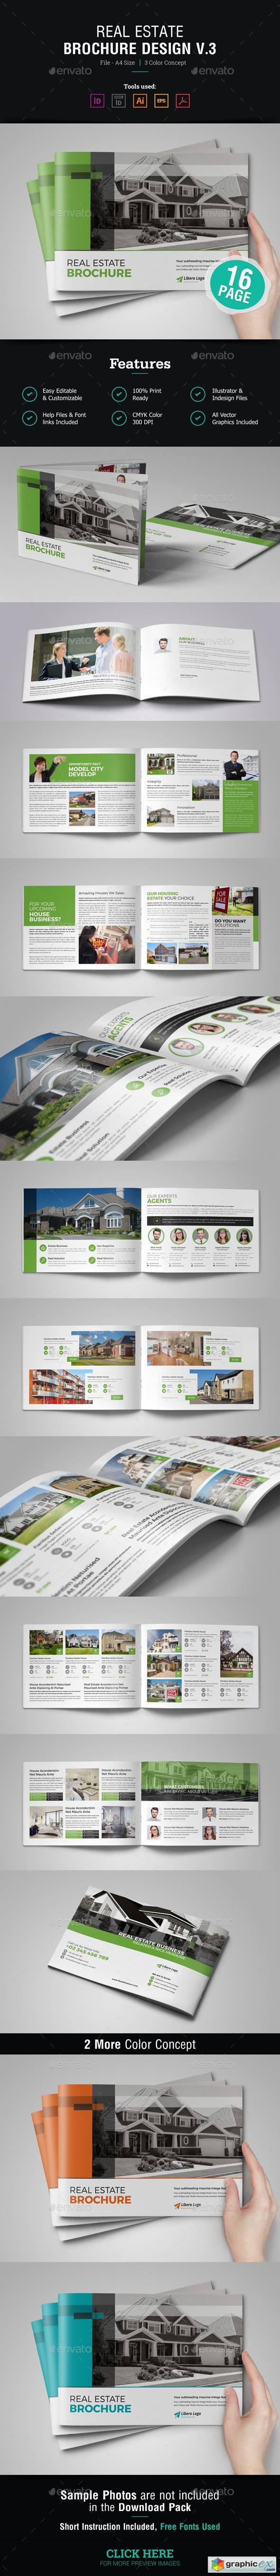 Real Estate Brochure Design v3